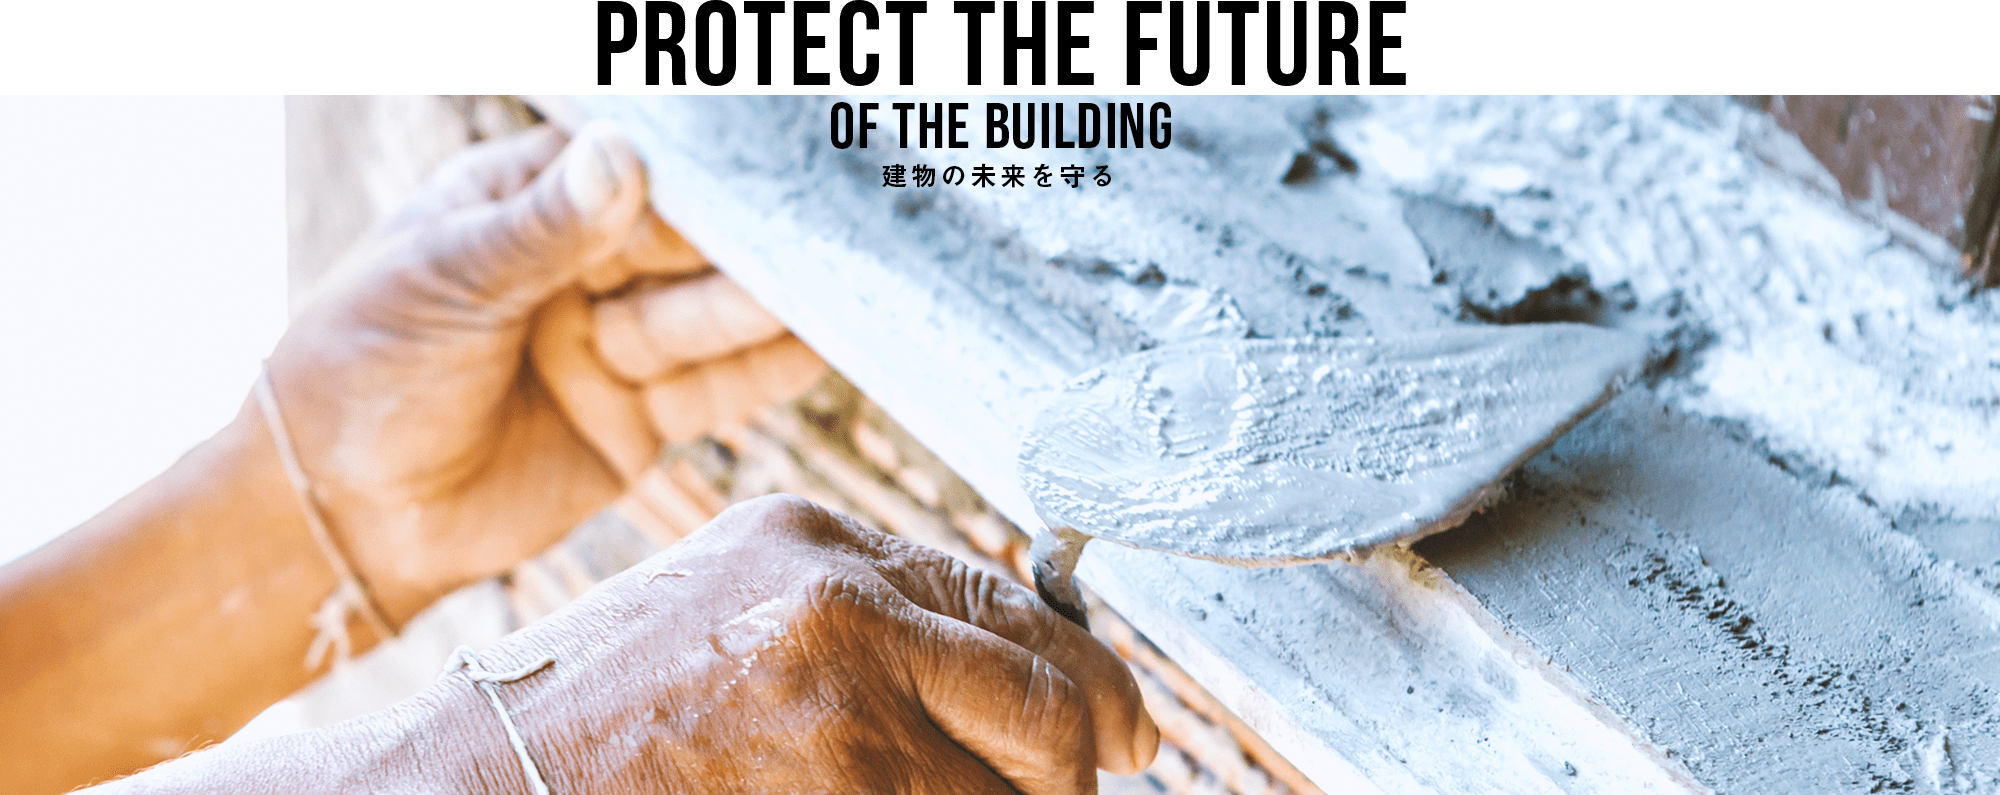 建物の未来を守る